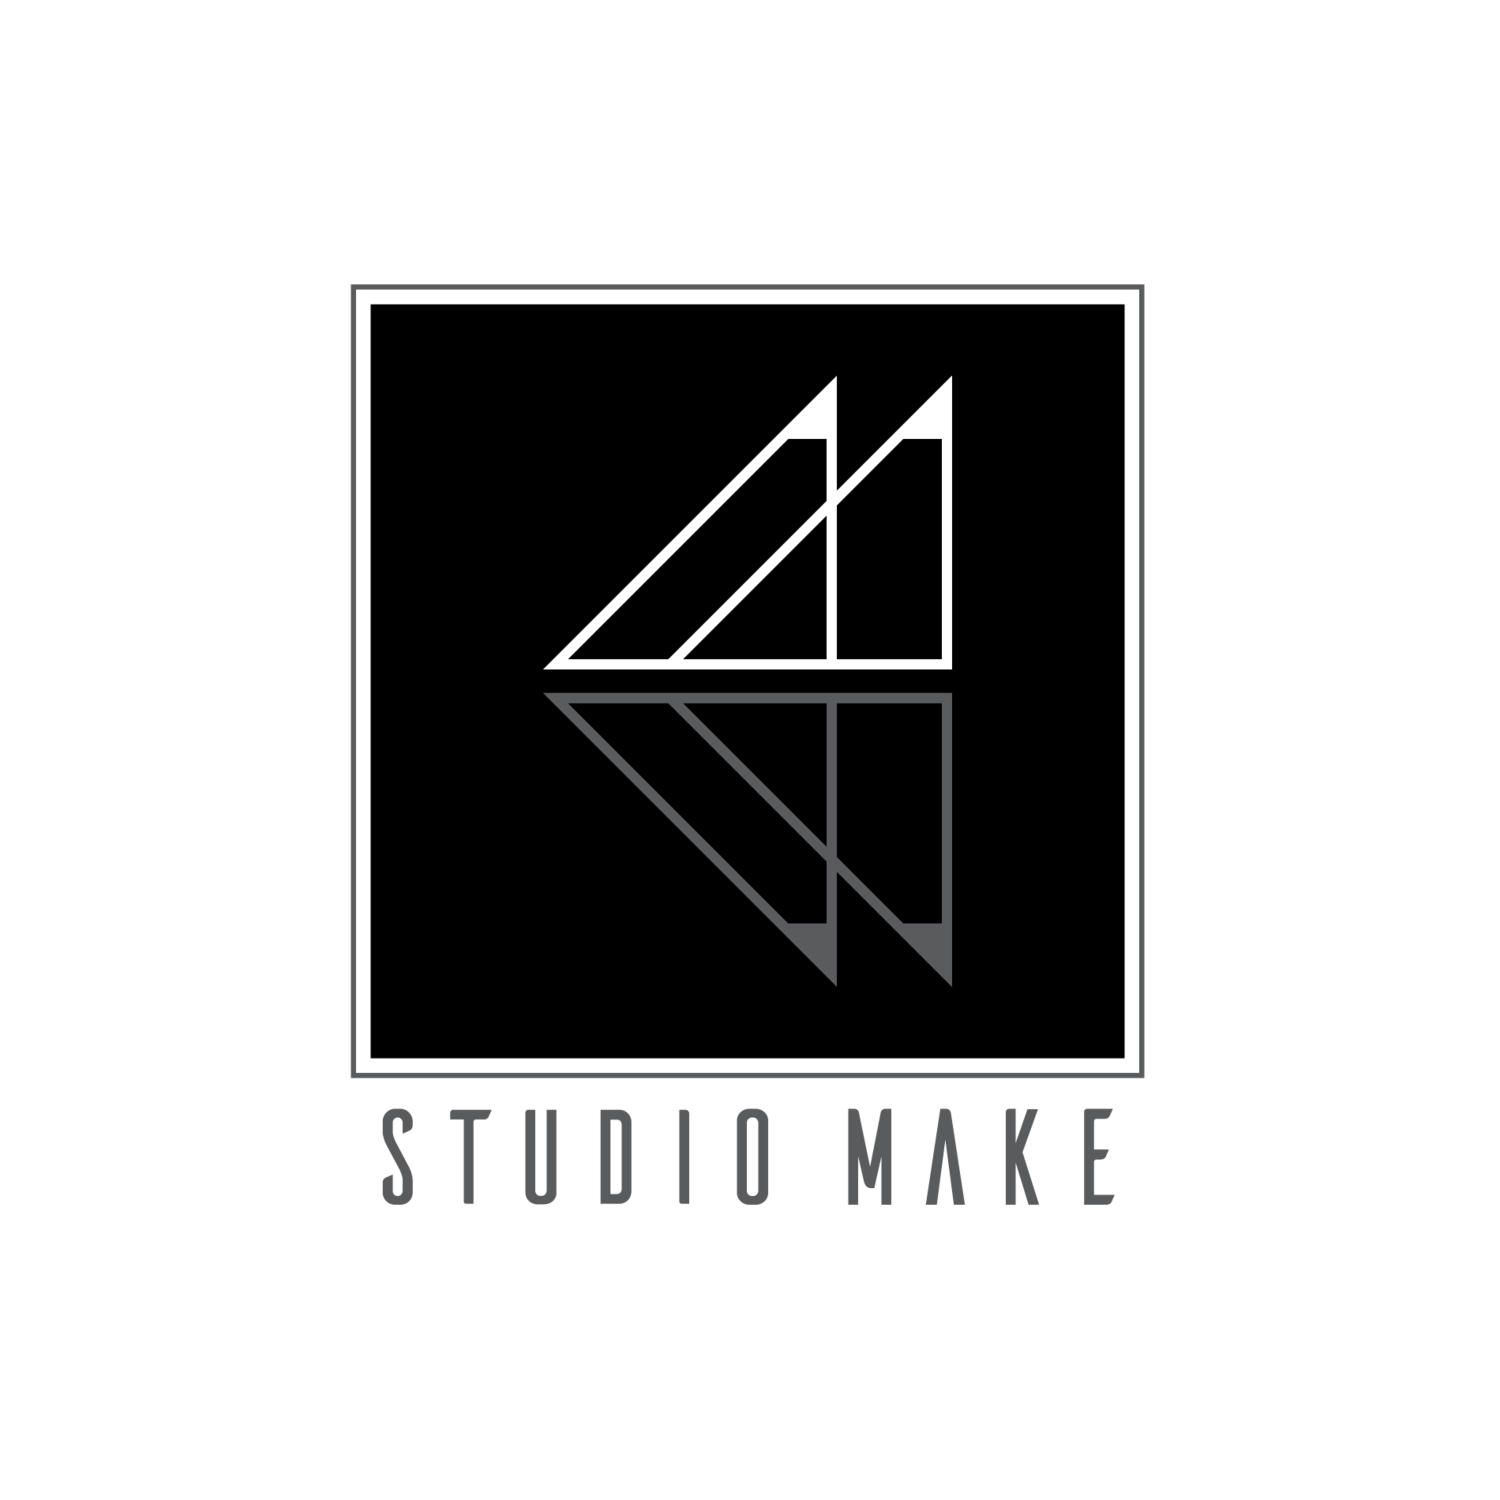 Studio Make